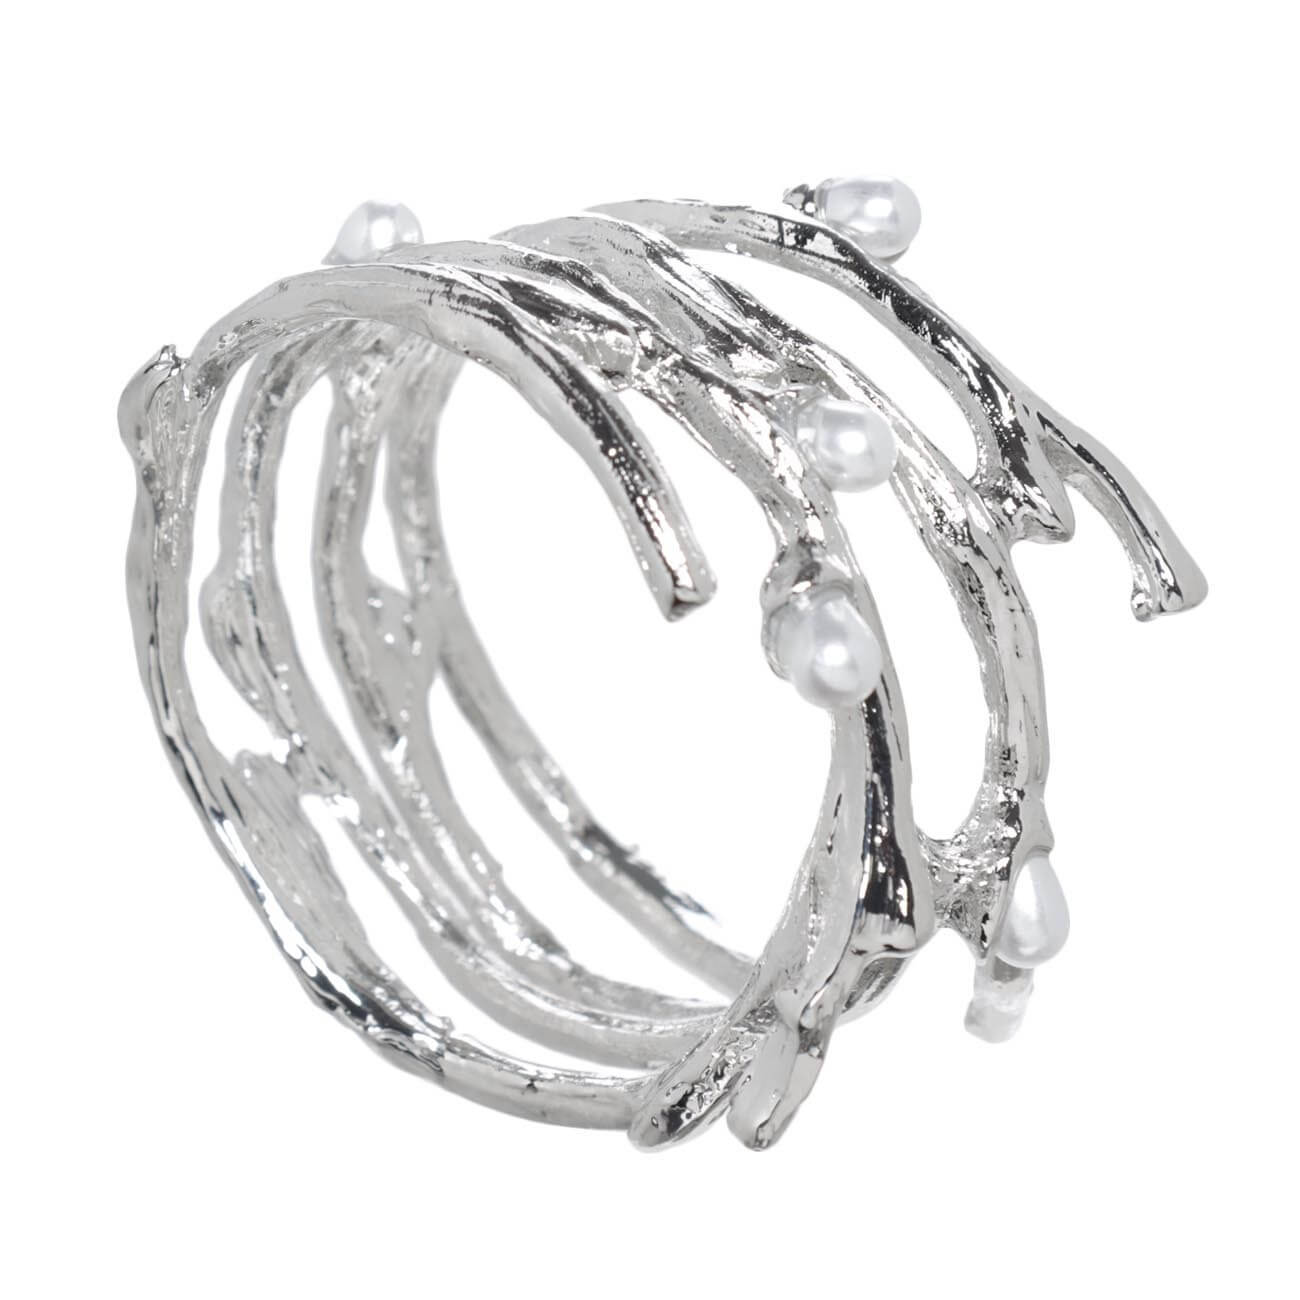 Кольцо для салфеток, 4 см, металл/пластик, серебристое, Жемчужины, Pearl кольцо amore ок ное в серебре безразмерно